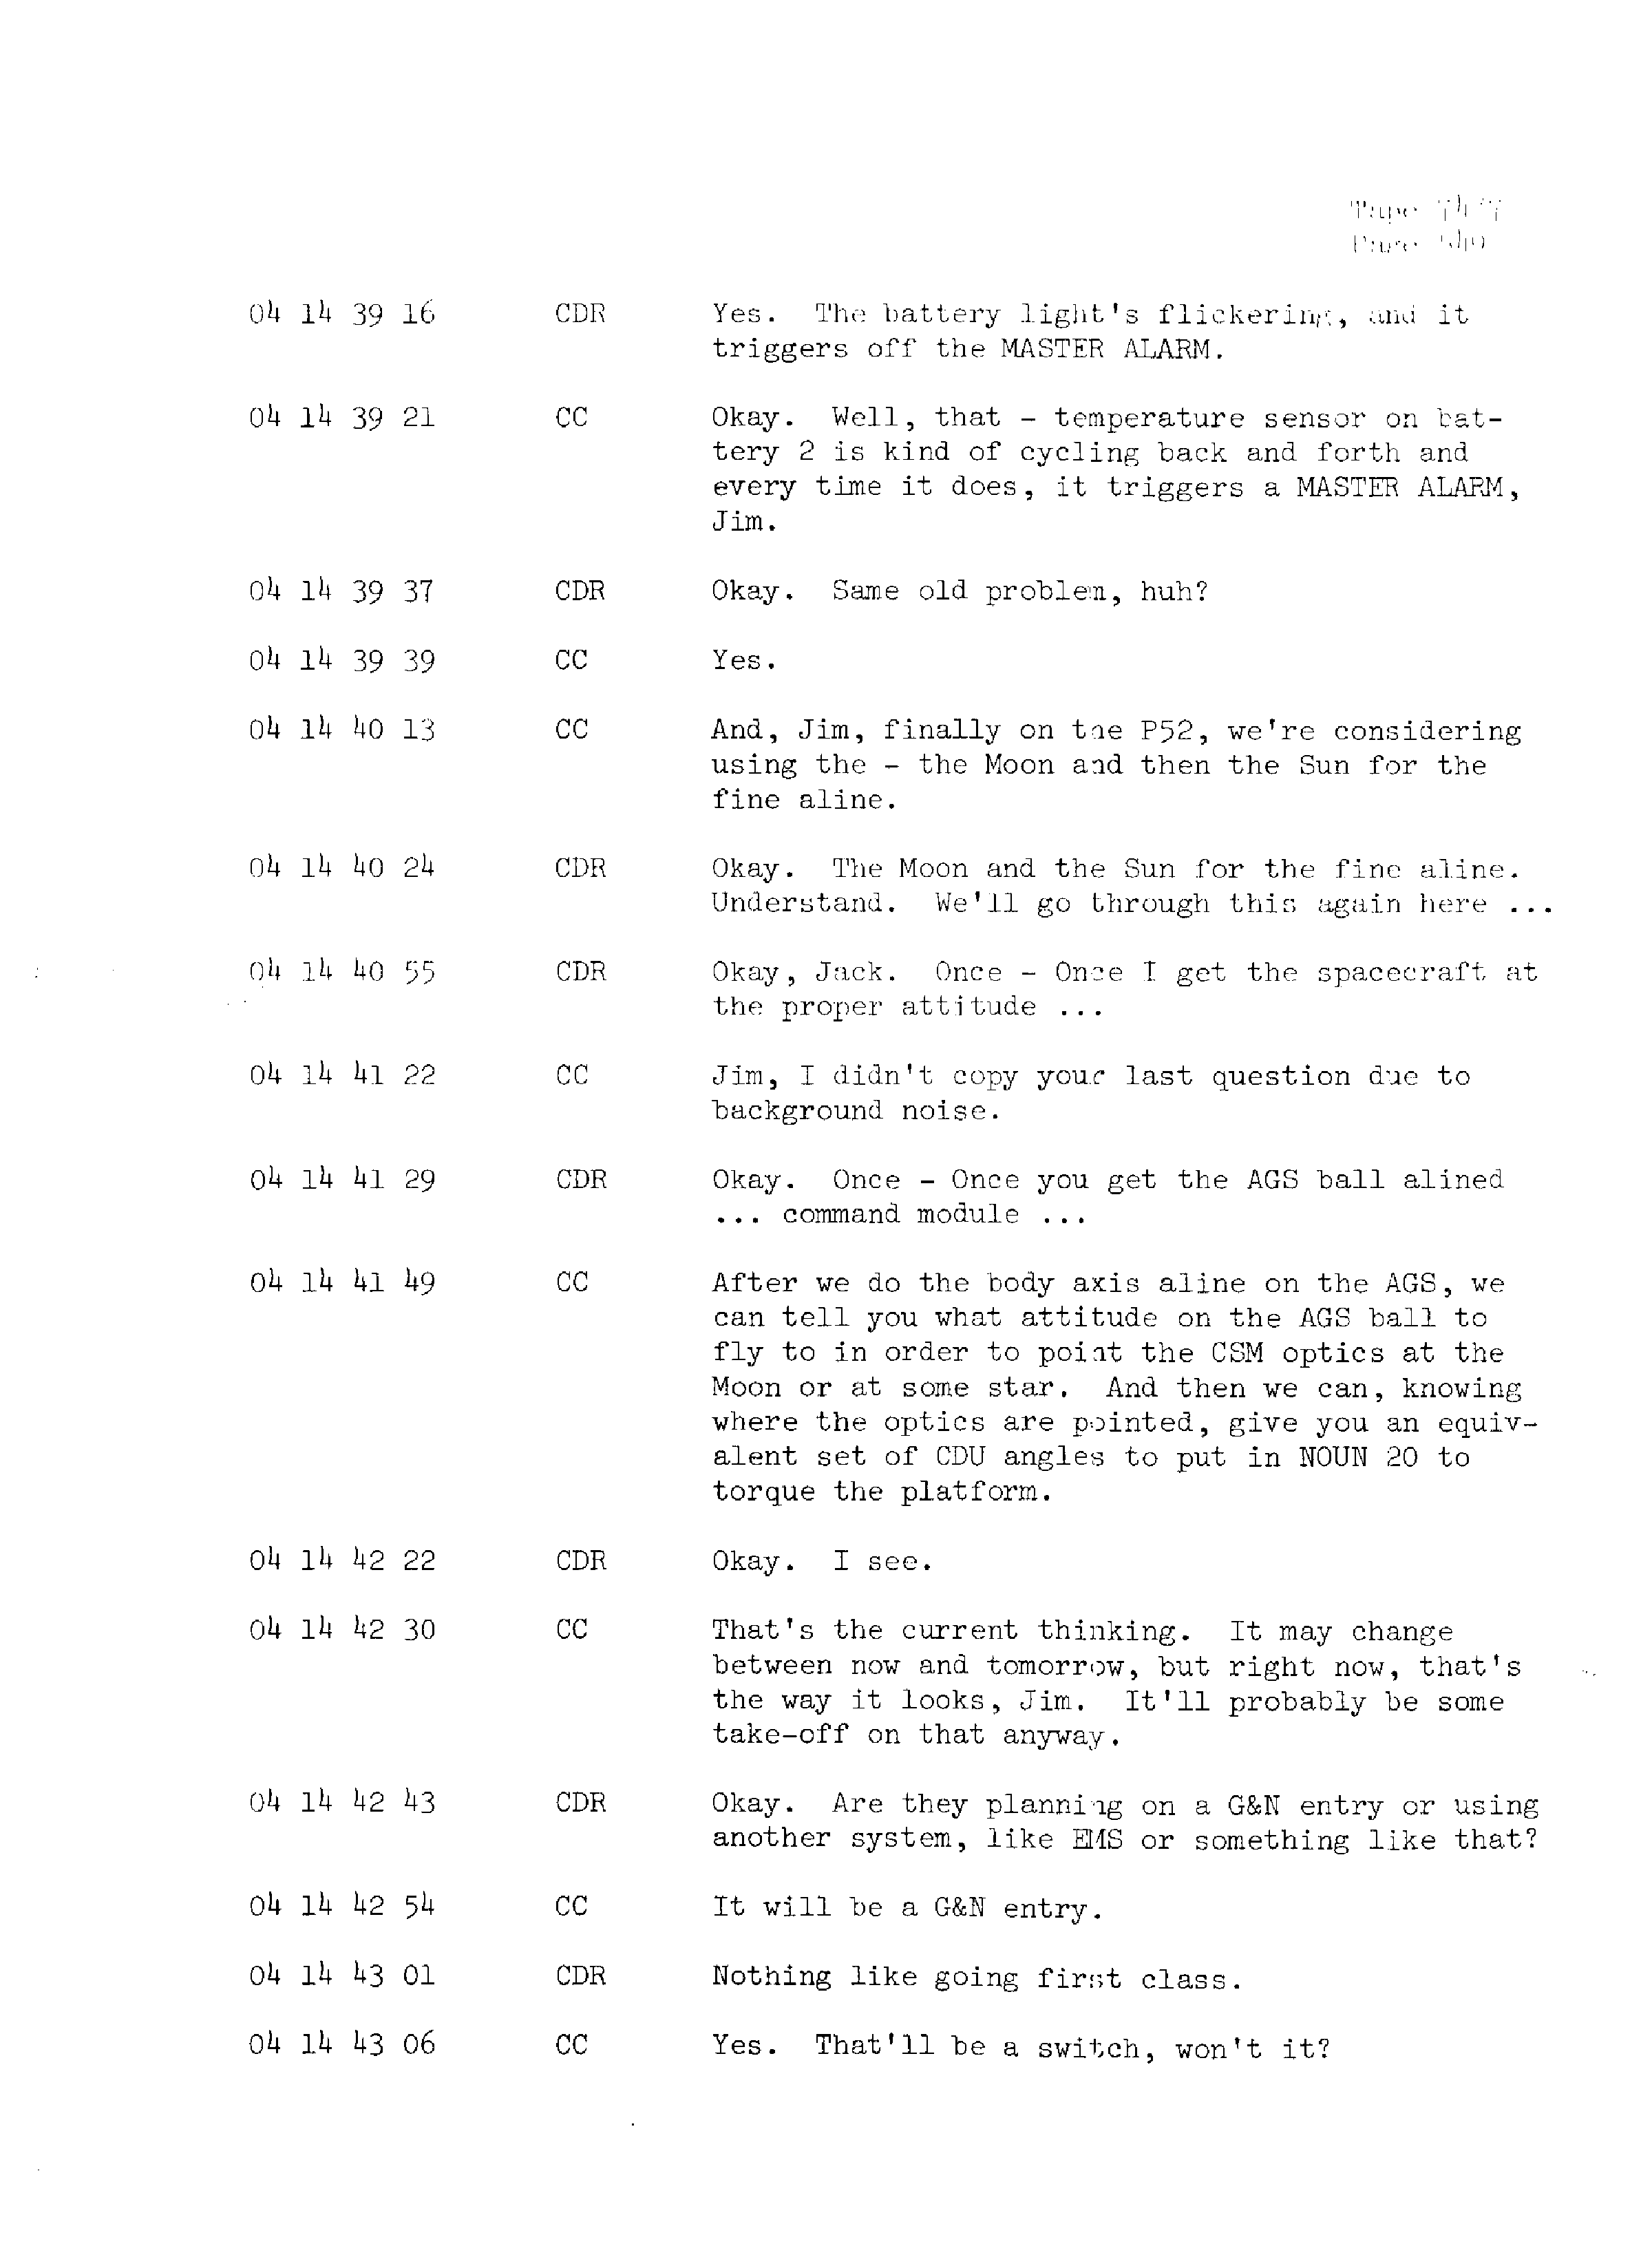 Page 556 of Apollo 13’s original transcript